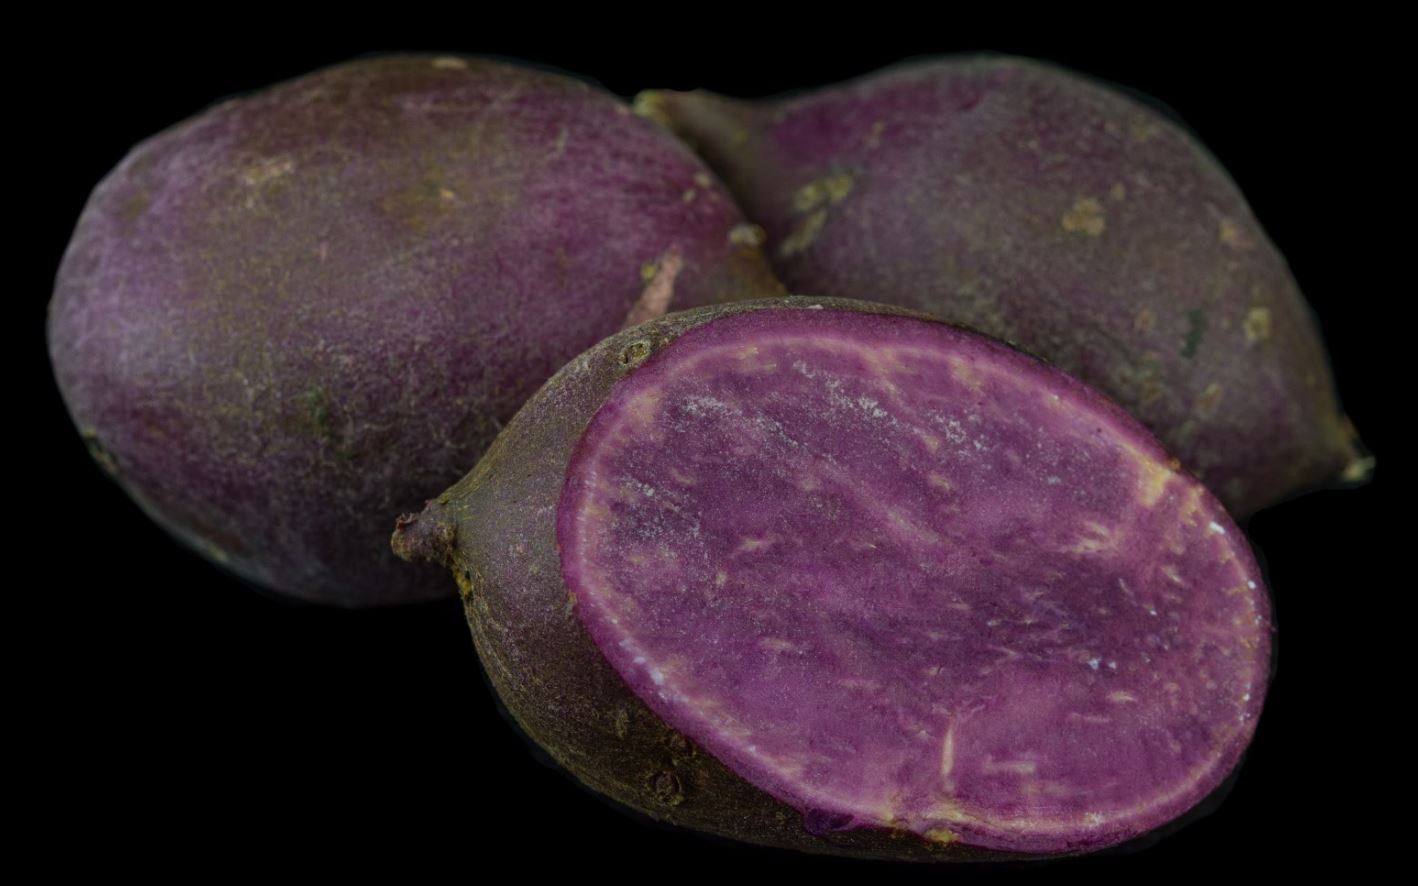 Variedade de Polpa Roxa (Ipomoea batatas)